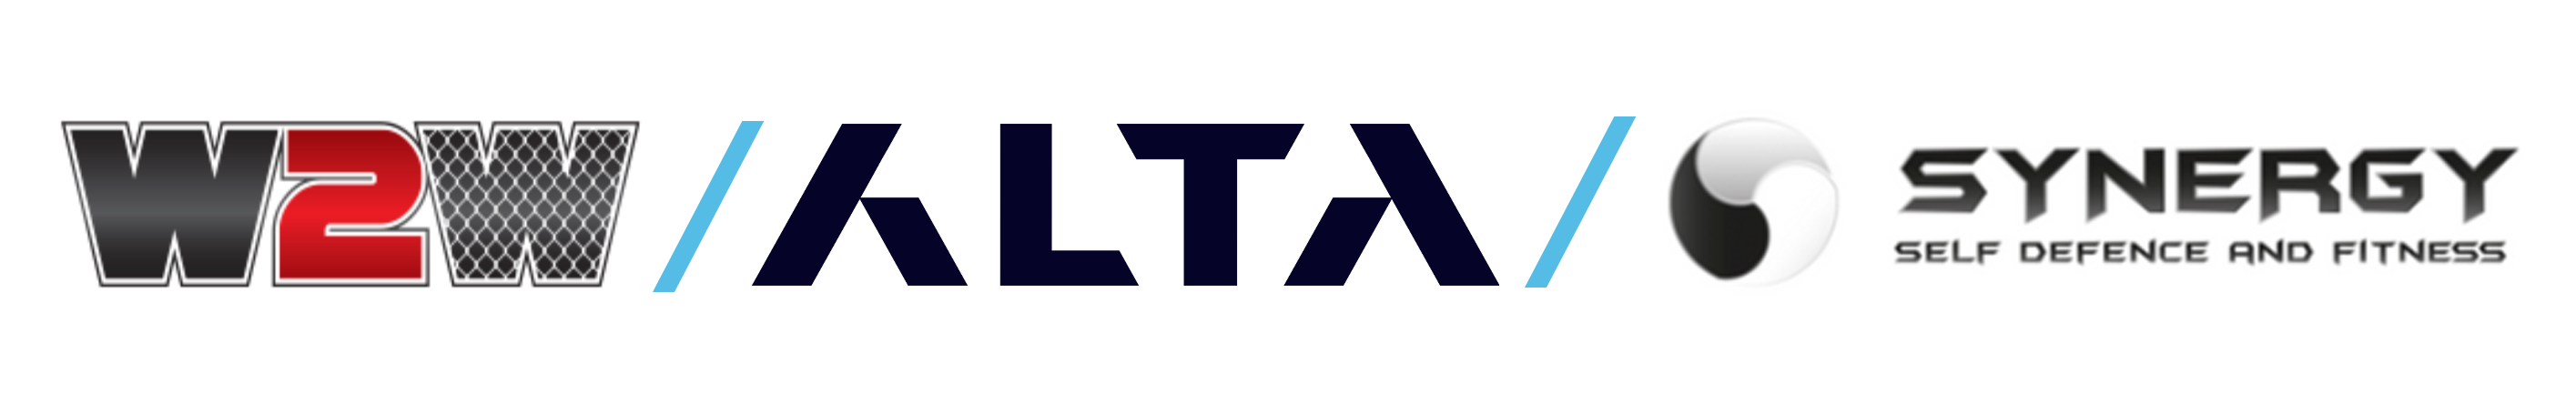 W2w Alta Synergy logo